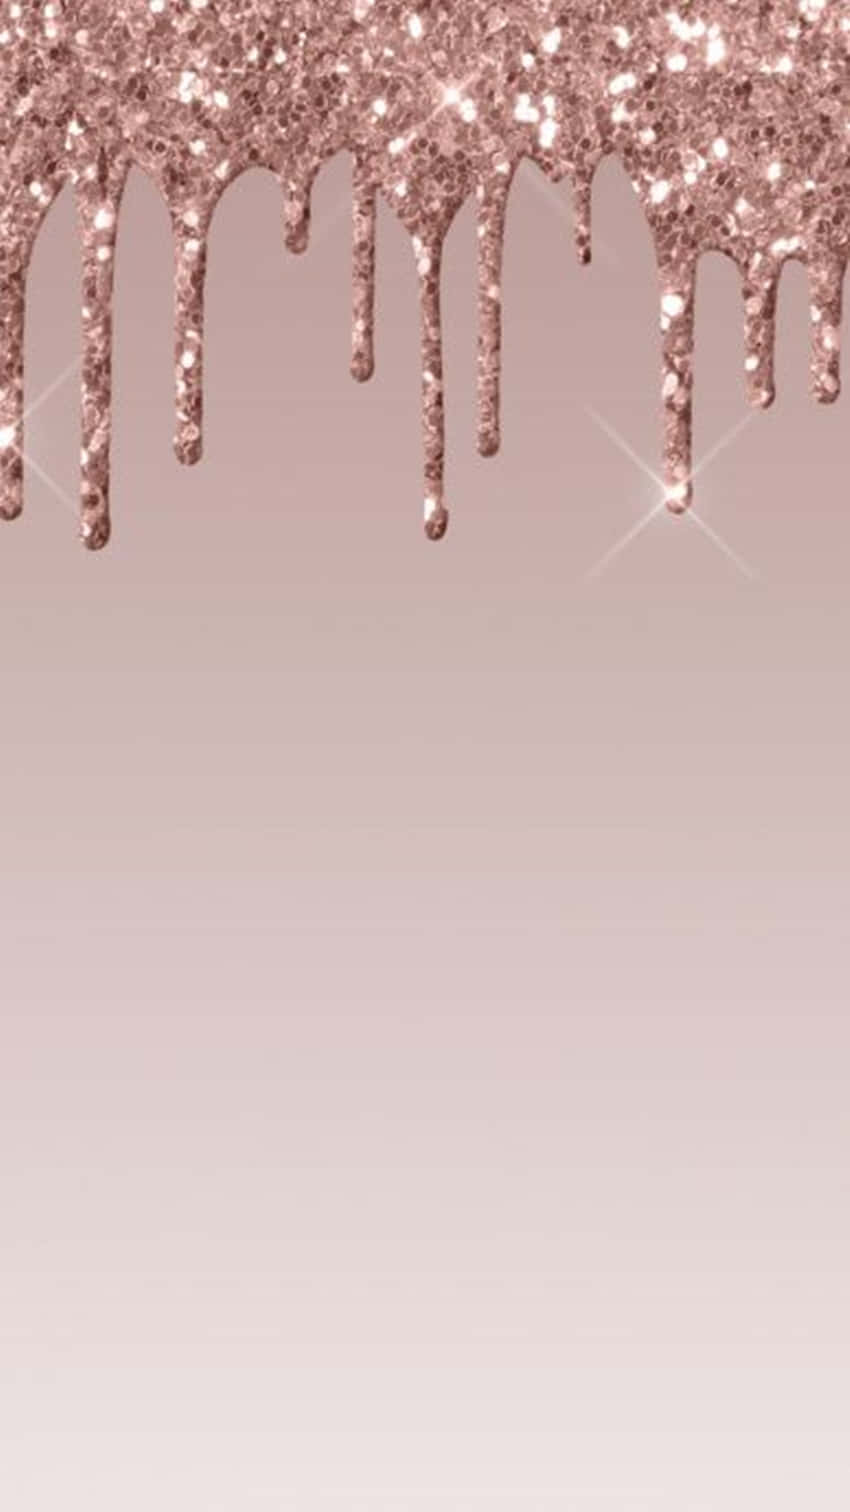 Et lyserødt glitrende baggrund med dryppende glitrende stjerner. Wallpaper